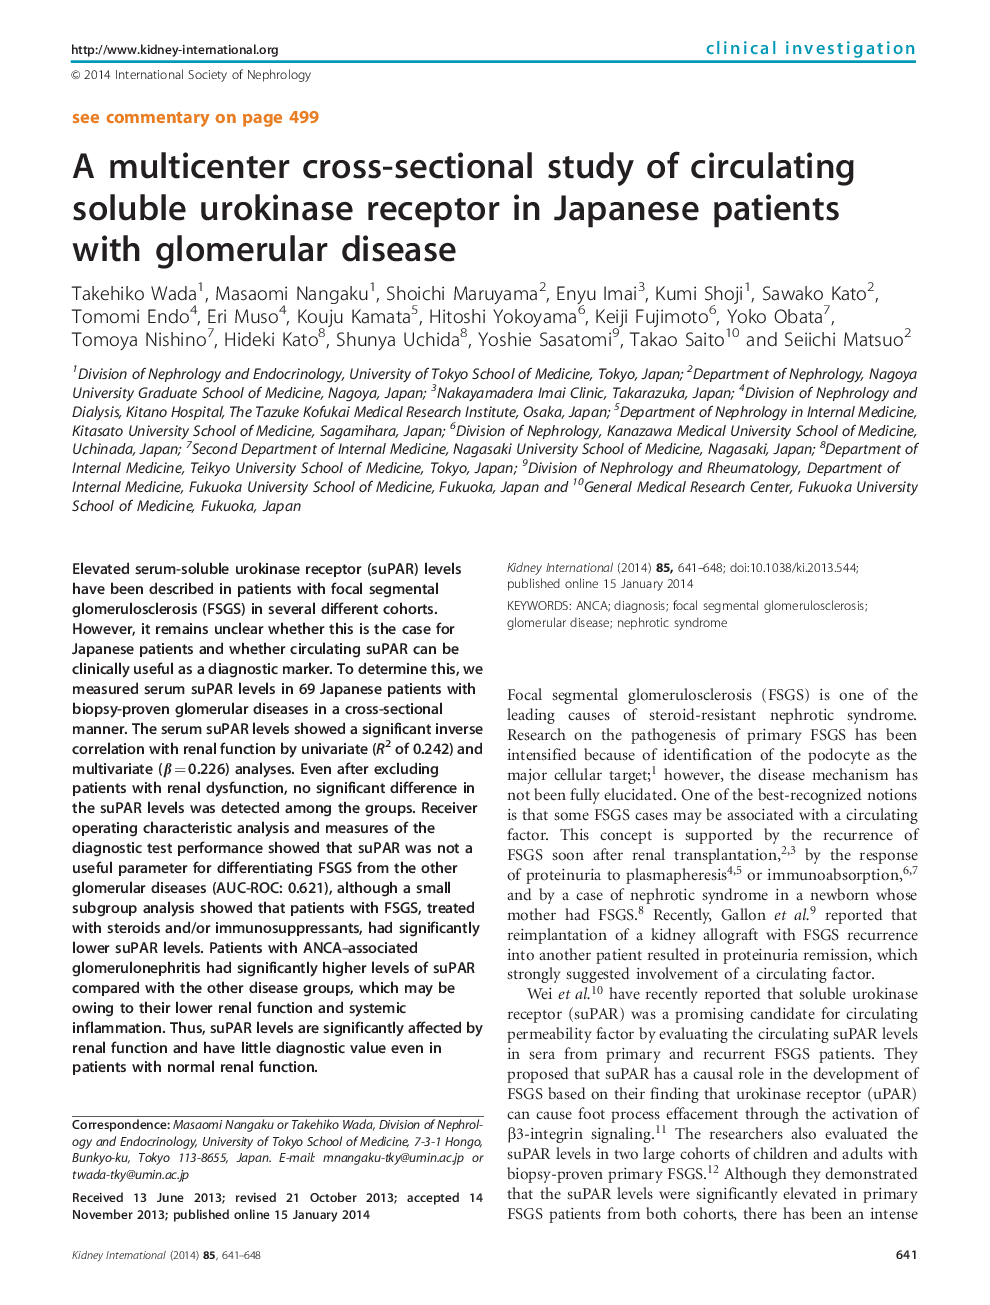 مطالعه مقطعی چند مرکزی در مورد گیرنده یوروکیناز محلول در بیماران ژاپنی با بیماری گلومرول 